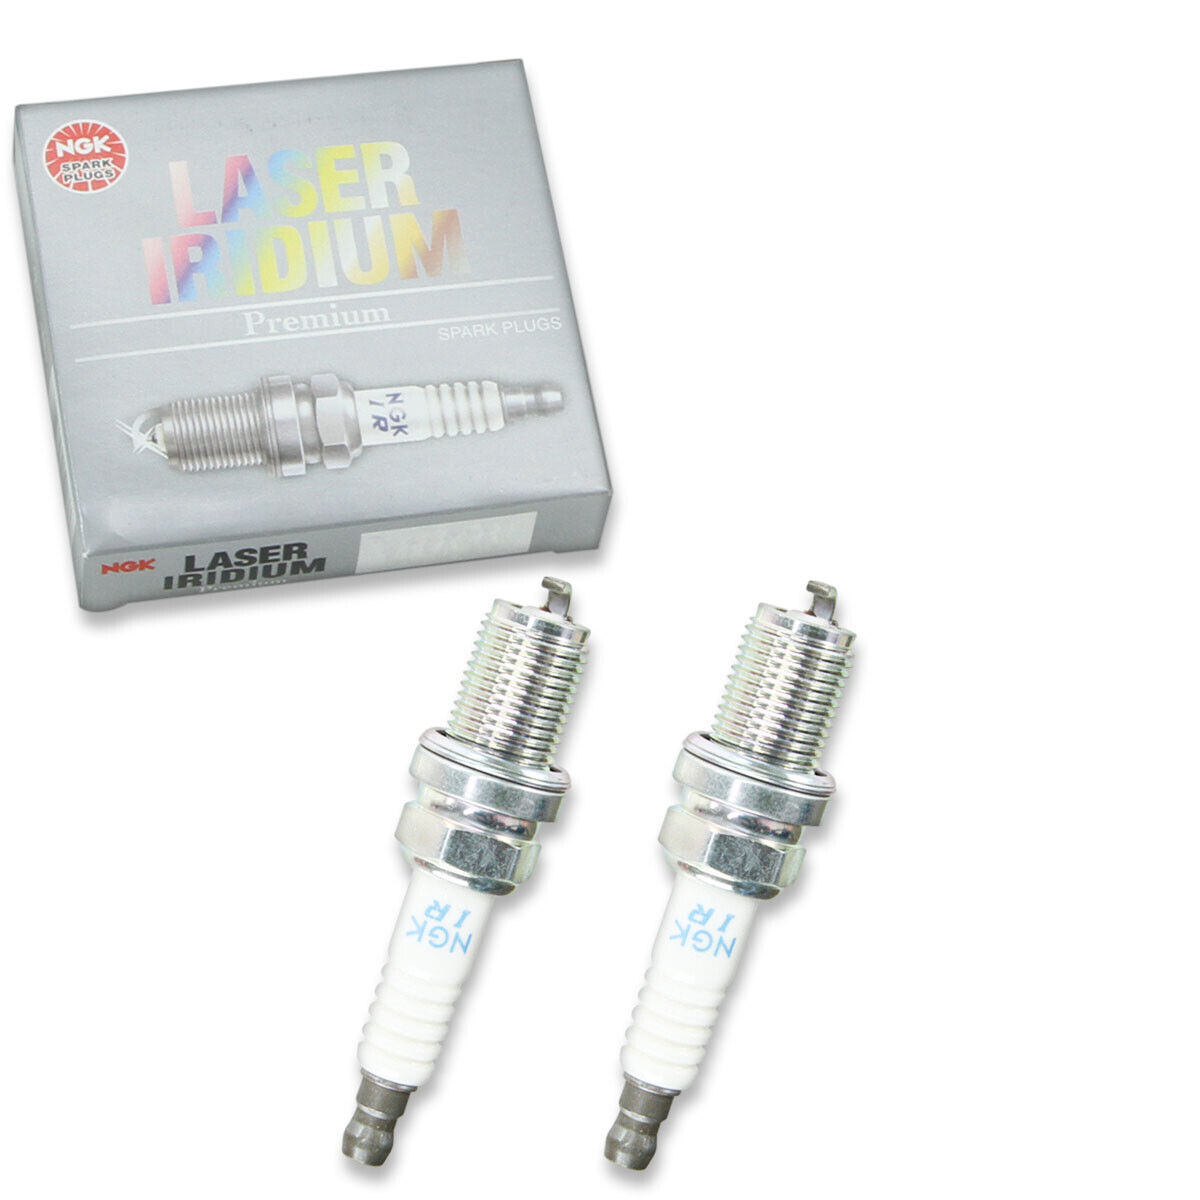 2 pc NGK 4709 FR9BI-11 Laser Iridium Spark Plugs for IK27C11 IK01-27 AR3910 ja